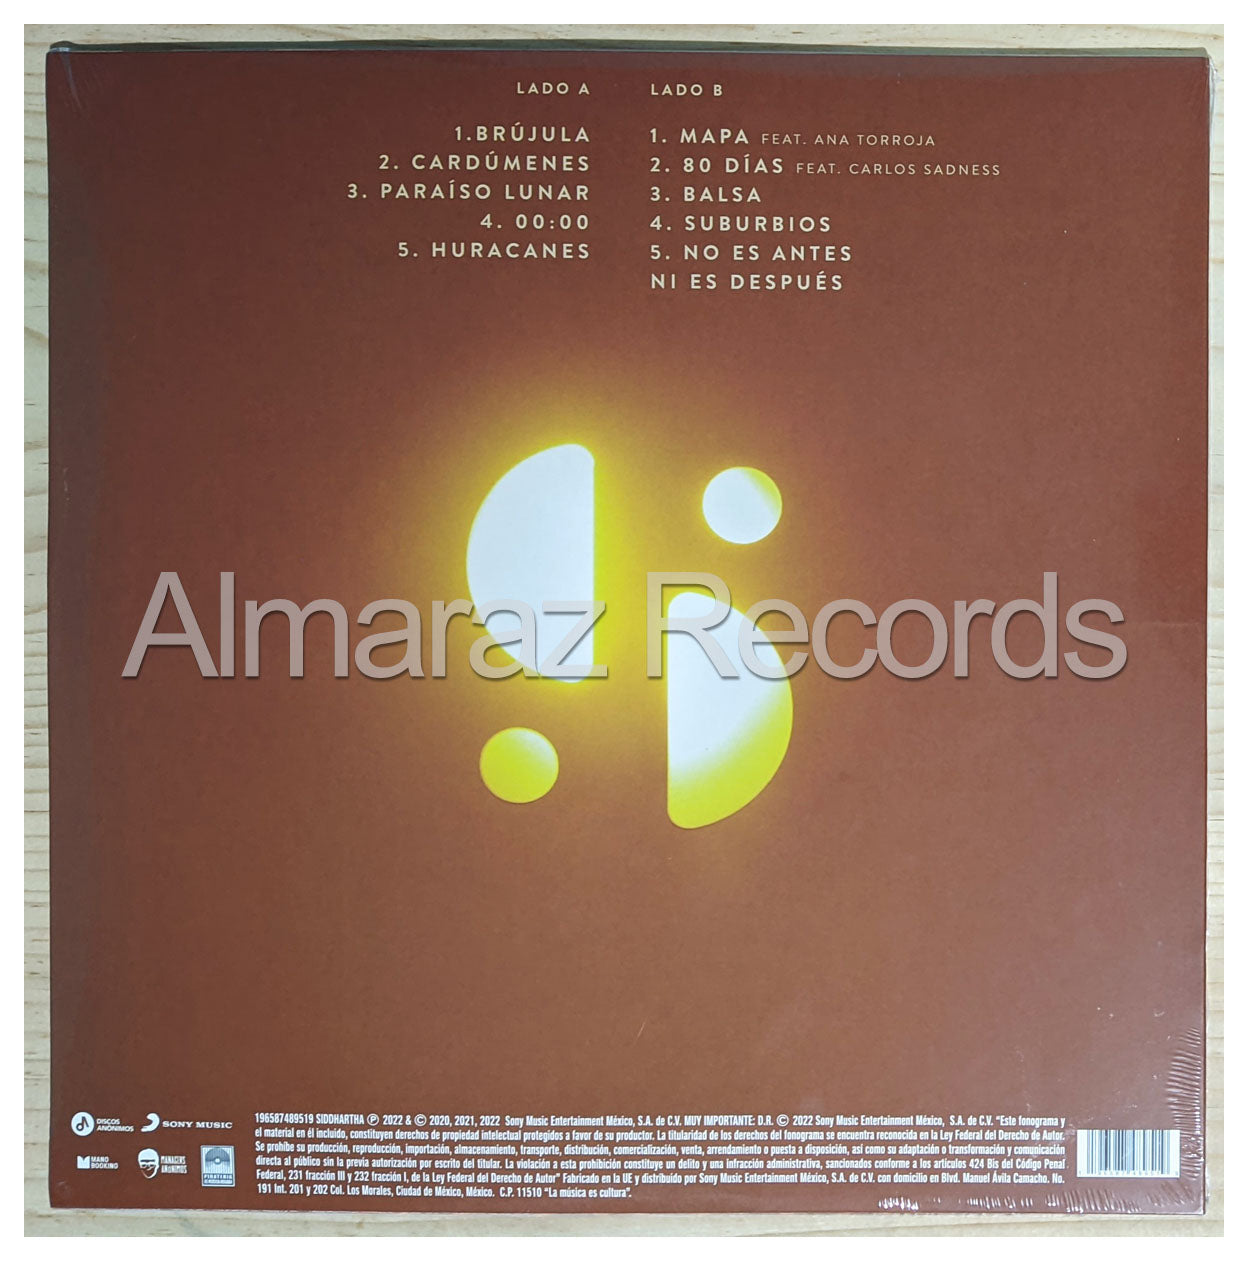 Siddhartha 00:00 Vinyl LP [Blanco]